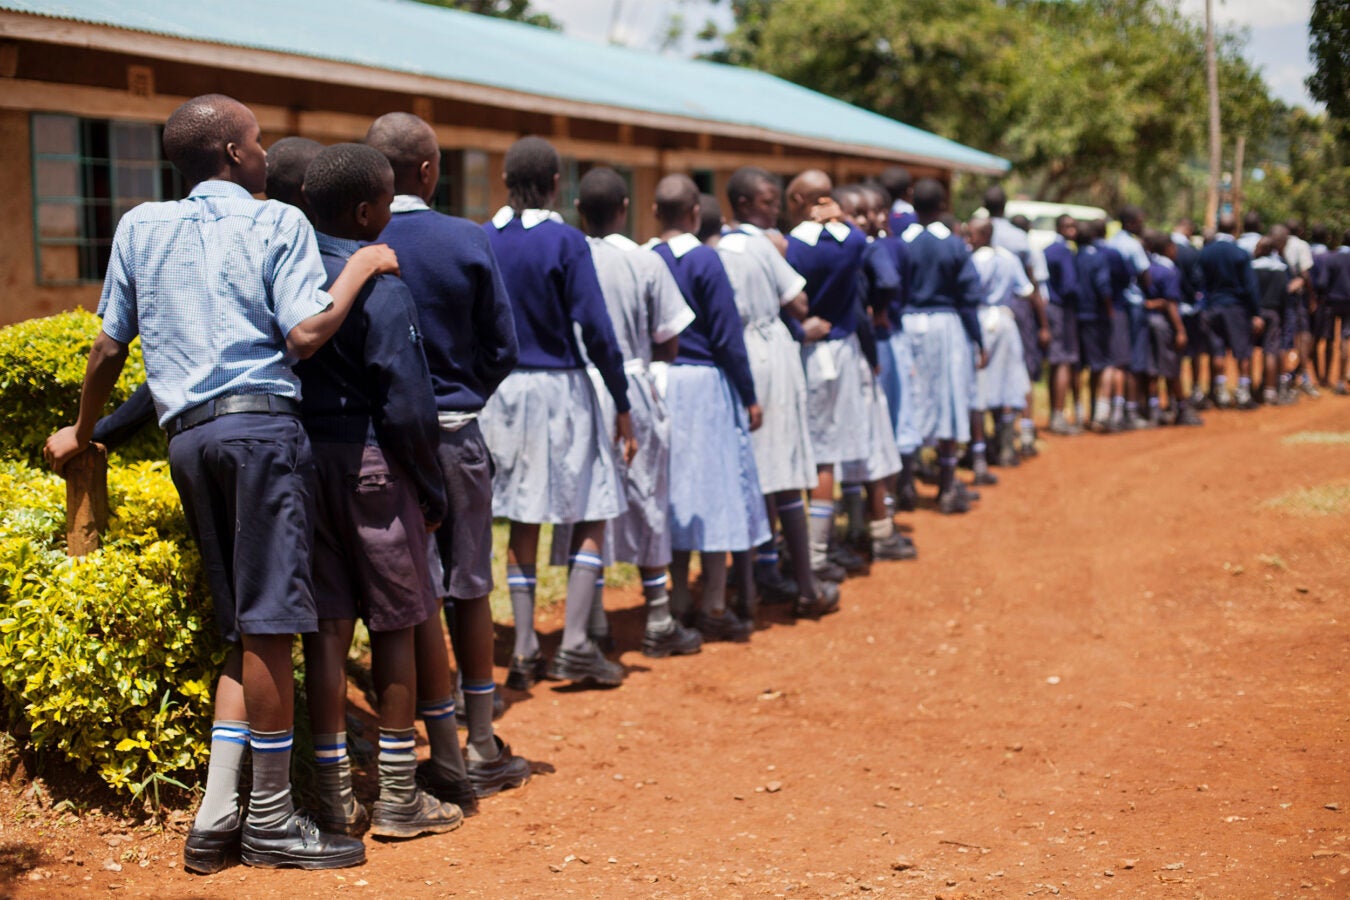 Schoolchildren standing in line.